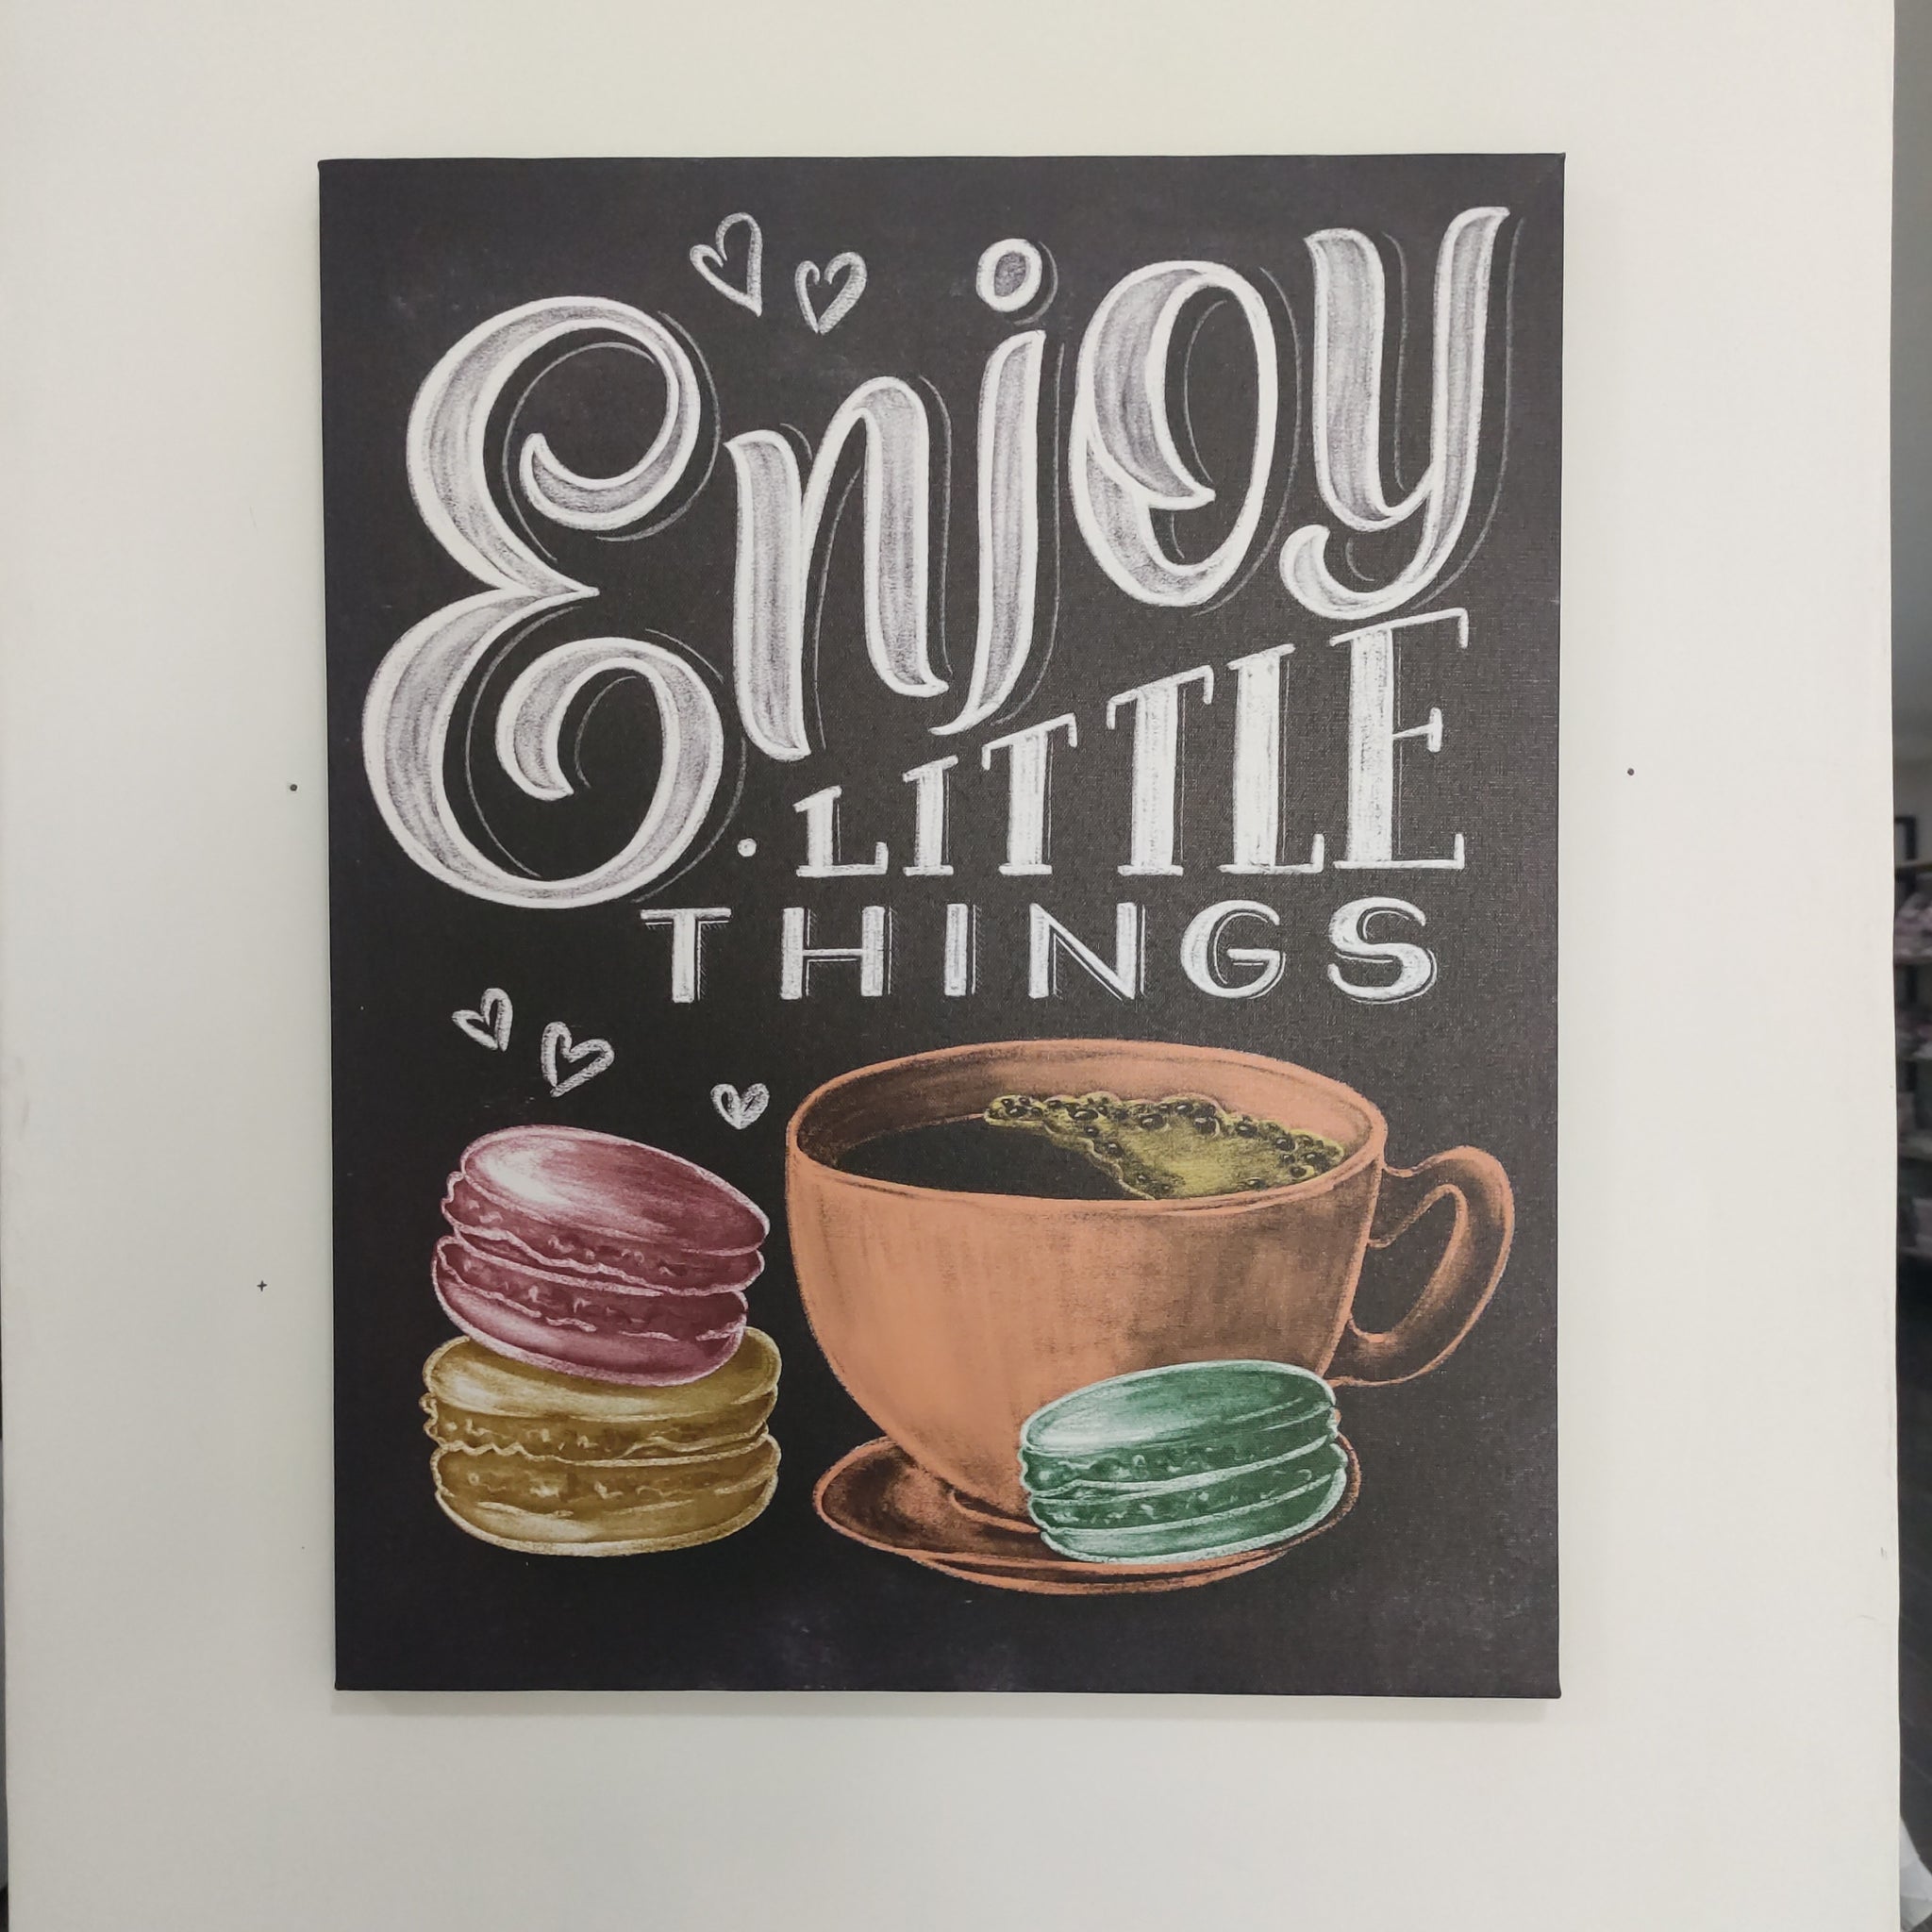 Tela Quadro "Enjoy little things"